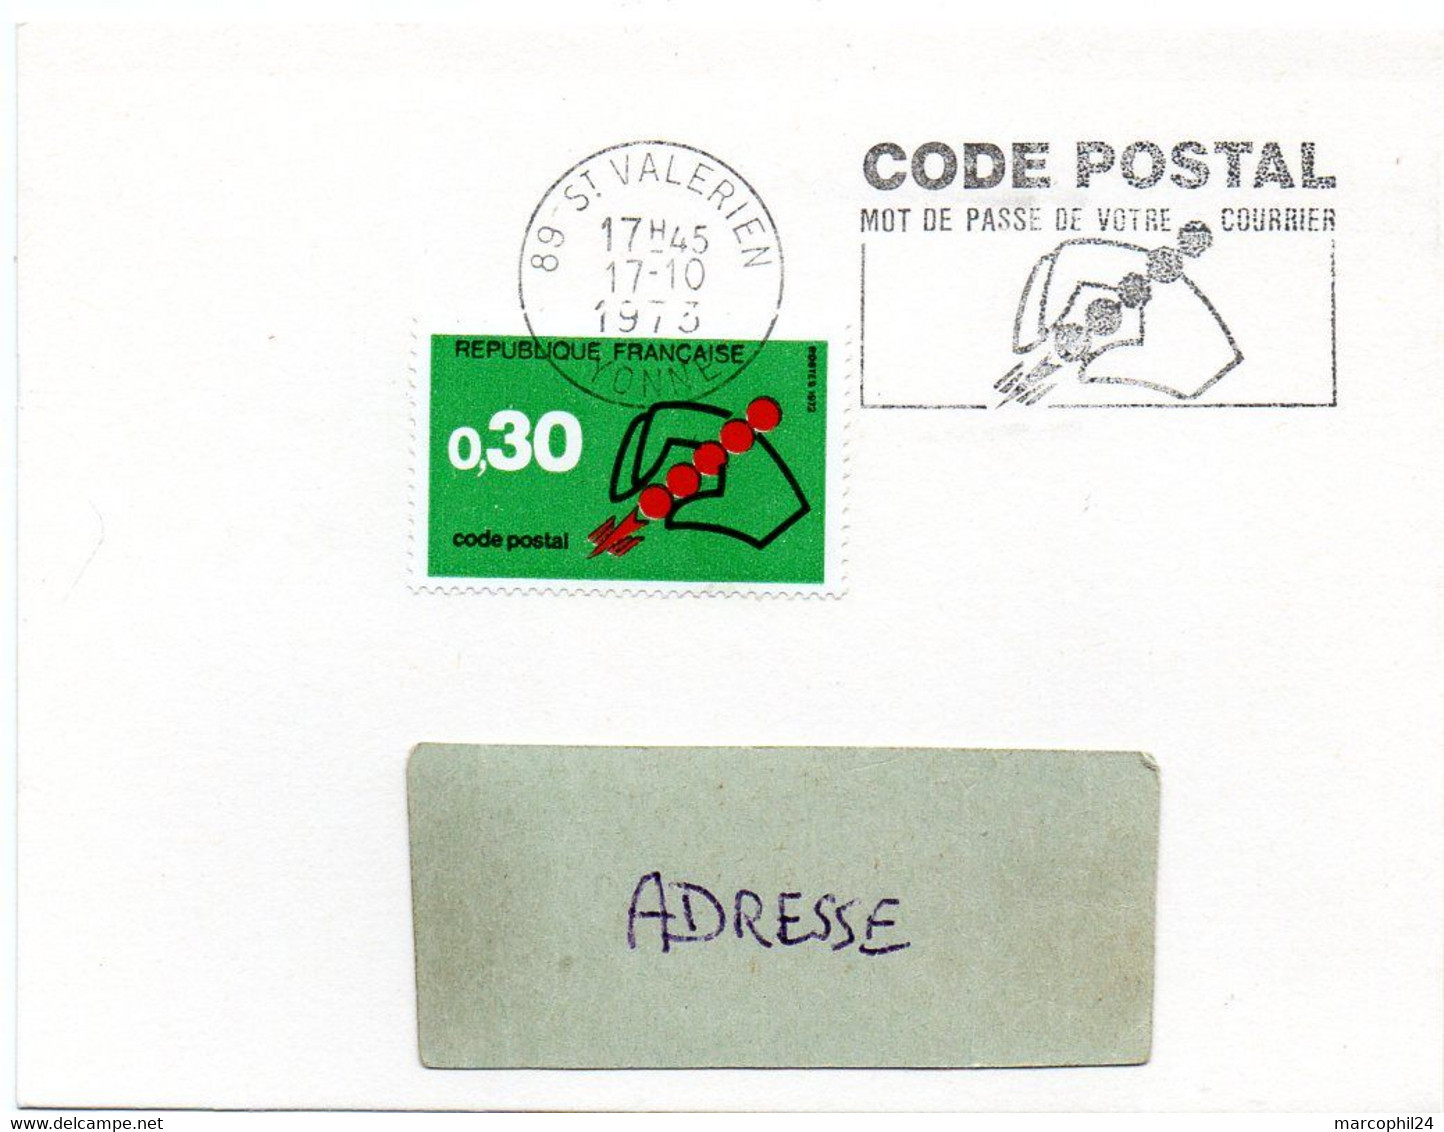 YONNE - Dépt N° 89 = ST VALERIEN 1973 =  FLAMME à DROITE CONCORDANTE = SECAP Illustrée ' CODE POSTAL / Mot Passe' - Code Postal